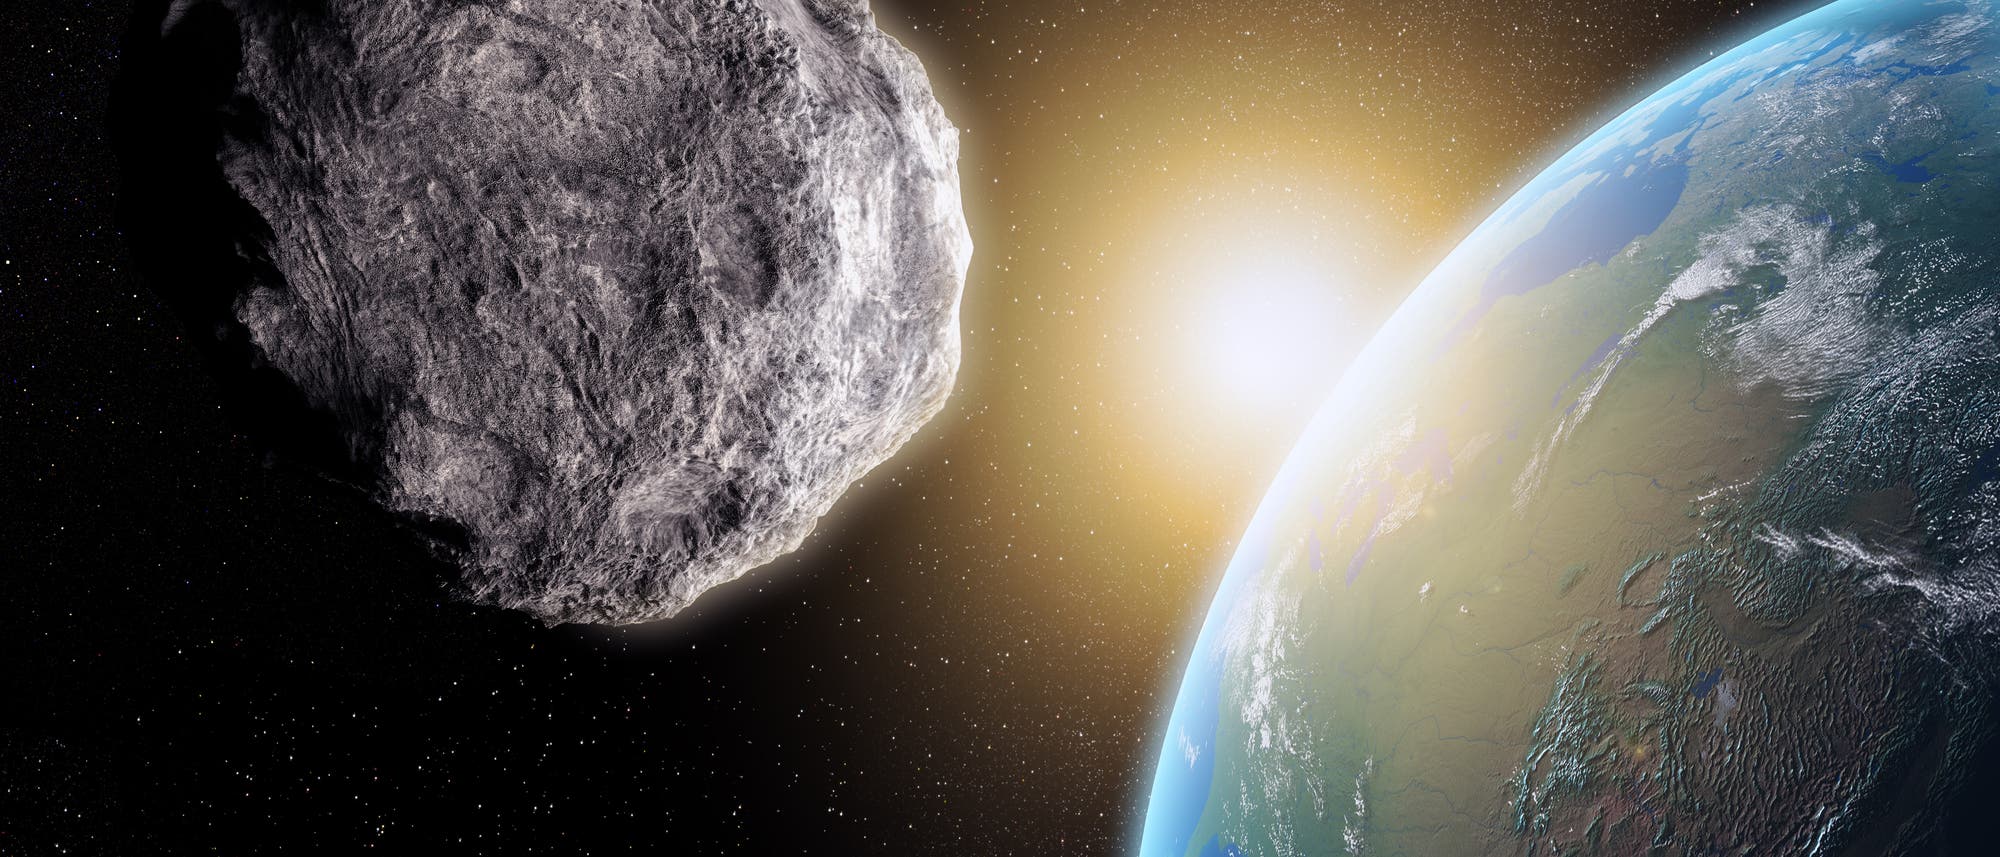 Ein Asteroid im Vordergrund fliegt auf die Erde zu. Wird er treffen? Viel spannender ist allerdings eine andere Frage: Wie kommt es eigentlich, dass die von Sonne und Erde abgewandte Seite des Asteroiden so exzellent ausgeleuchtet ist?